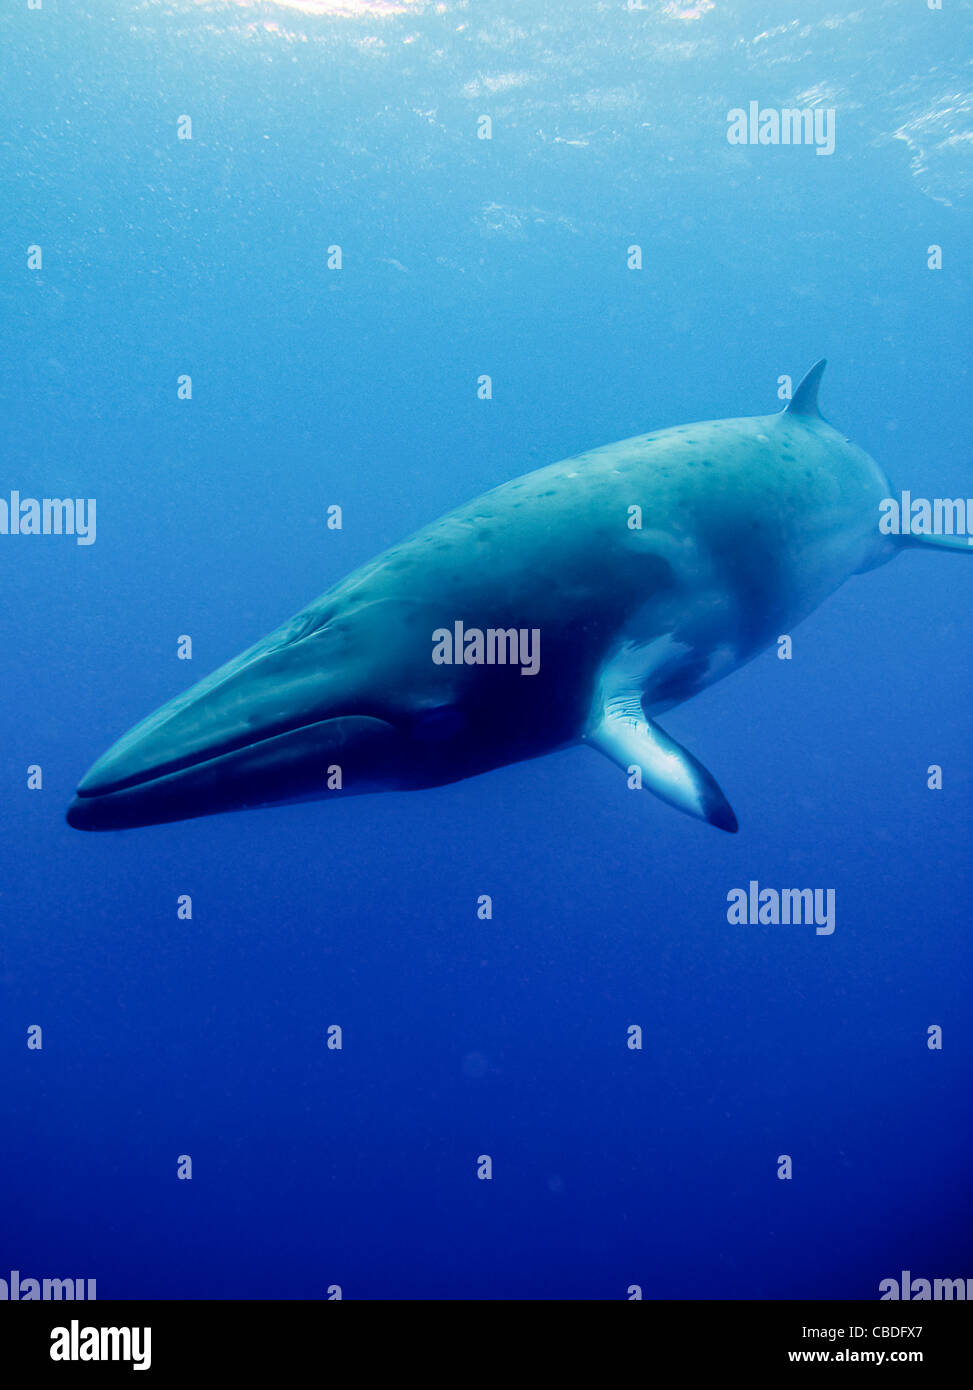 Dwarf Minke Whale on Australia's Great Barrier Reef. Stock Photo